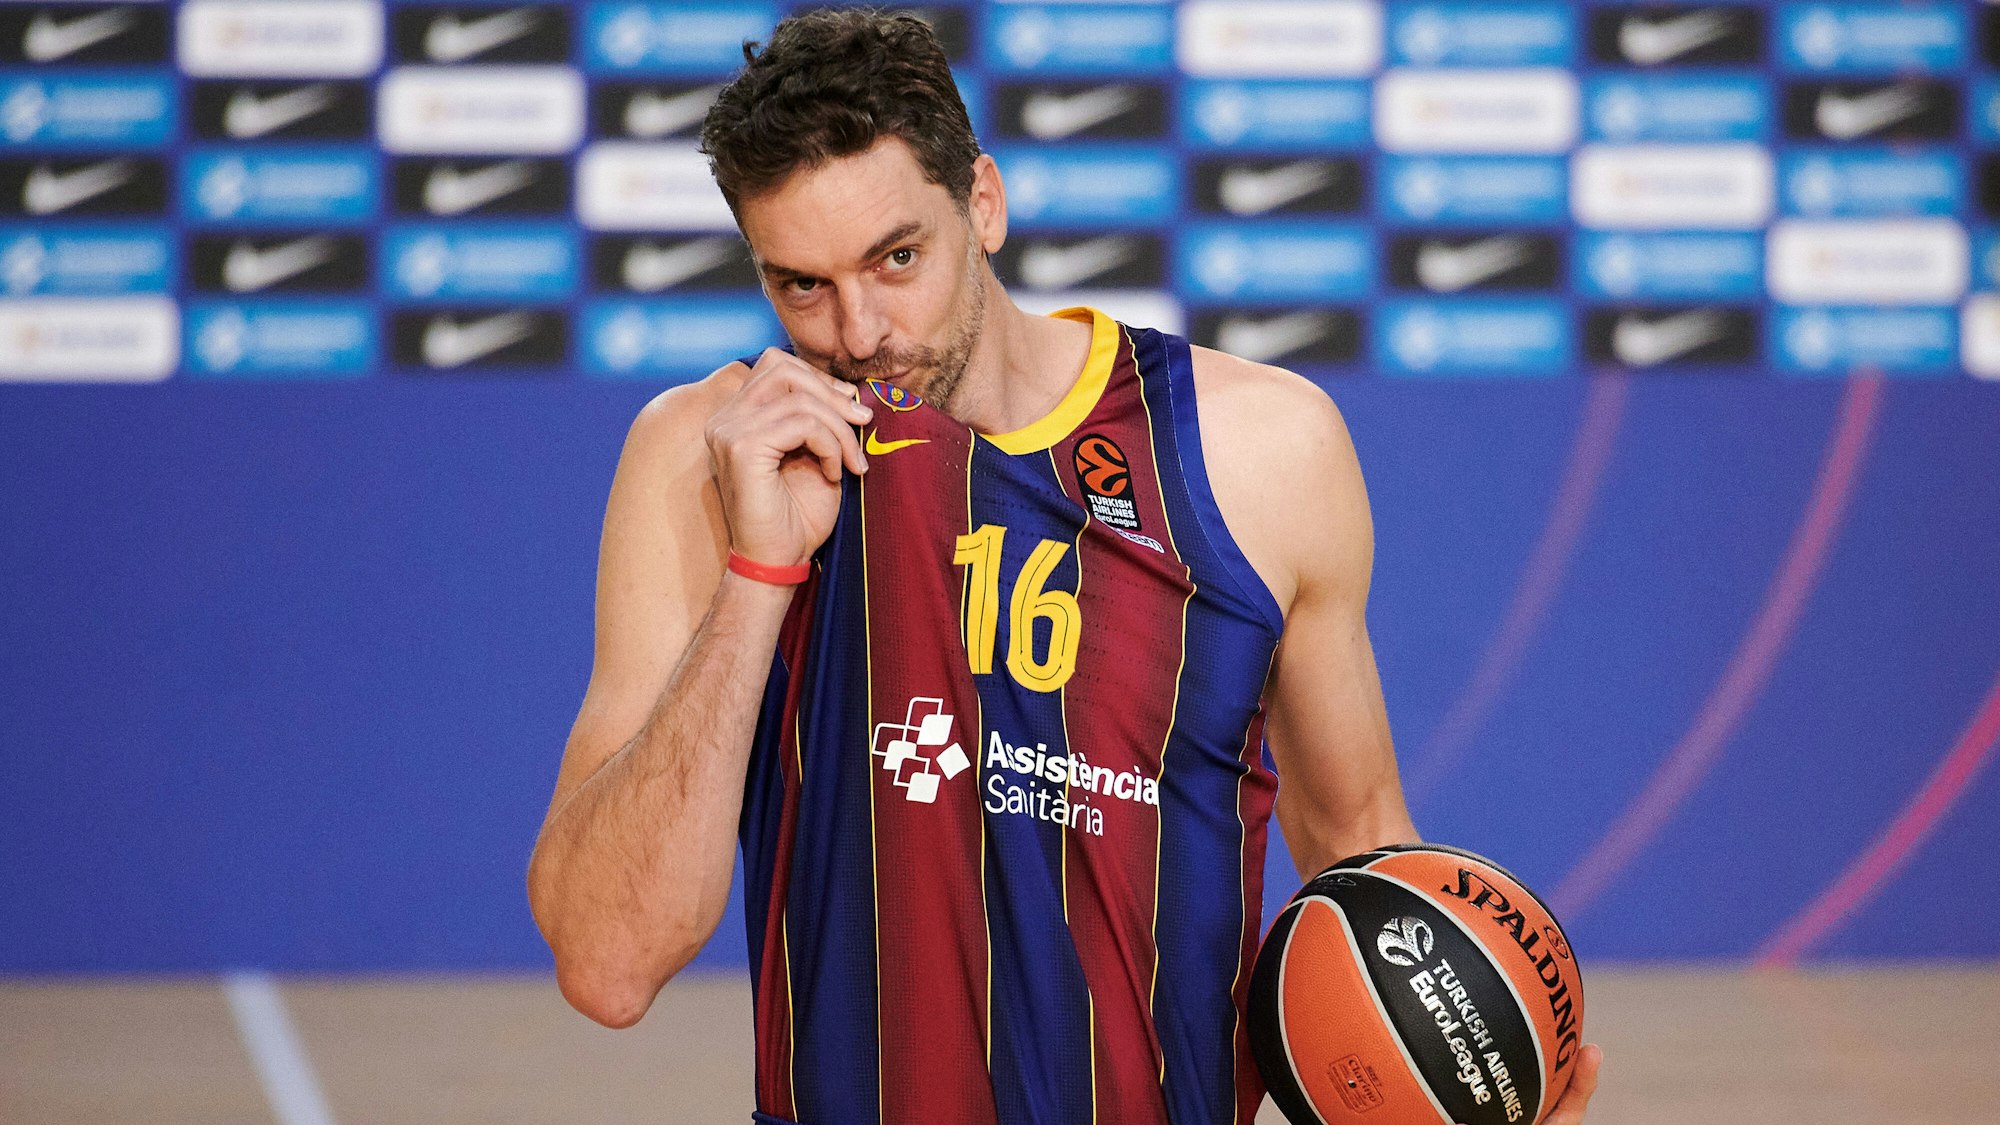 Der spanische Basketballspieler Pau Gasol wird als neuer Spieler des FC Barcelona im Palau Blaugrana präsentiert und küsst das Wappen des Klubs.